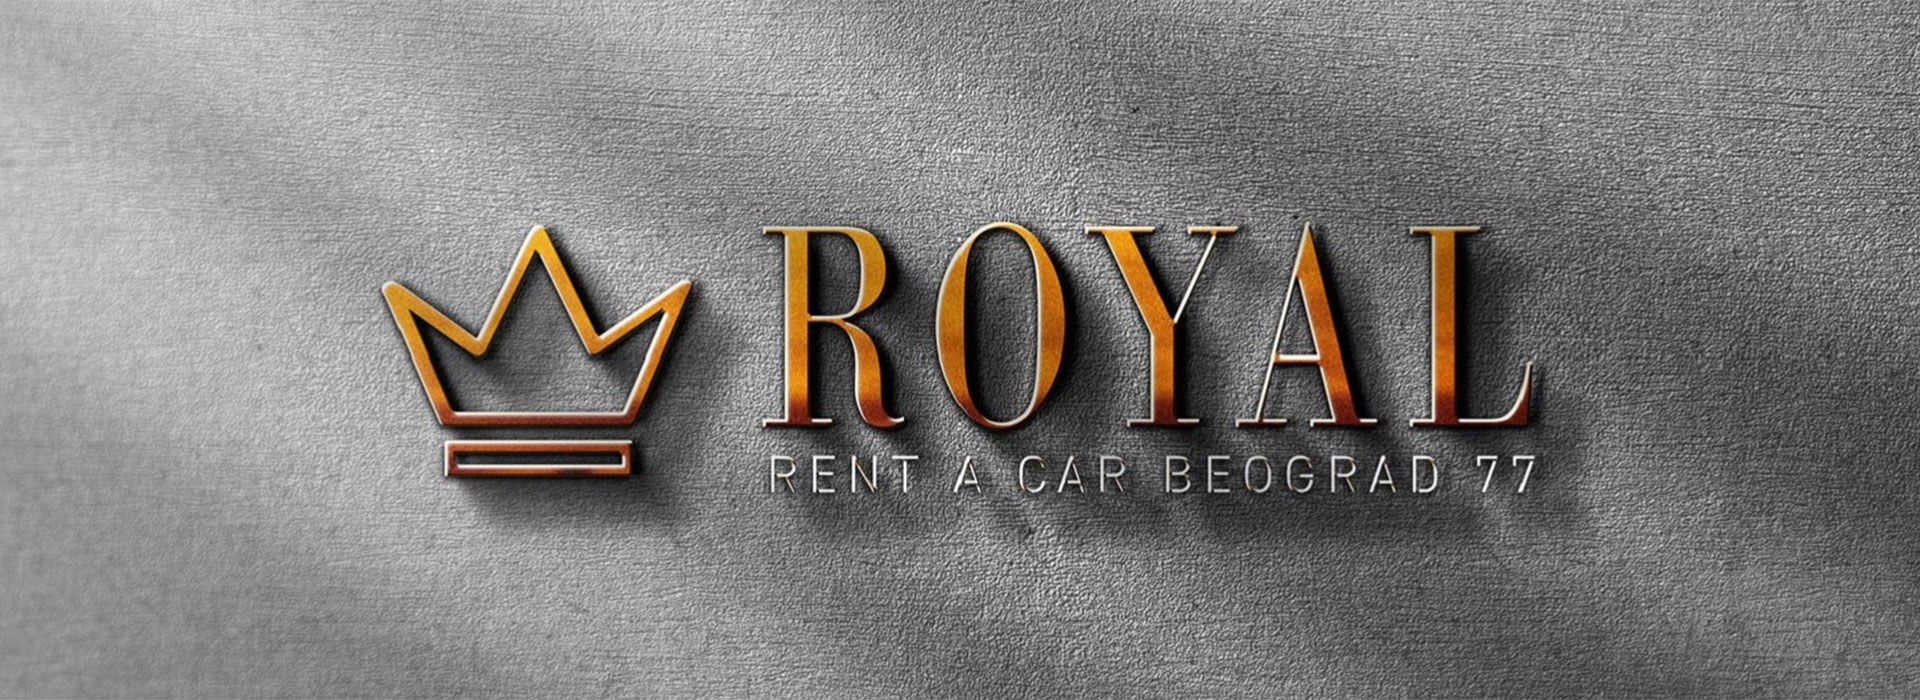 Royal Volvo servis Beograd | Rent a car Beograd Royal